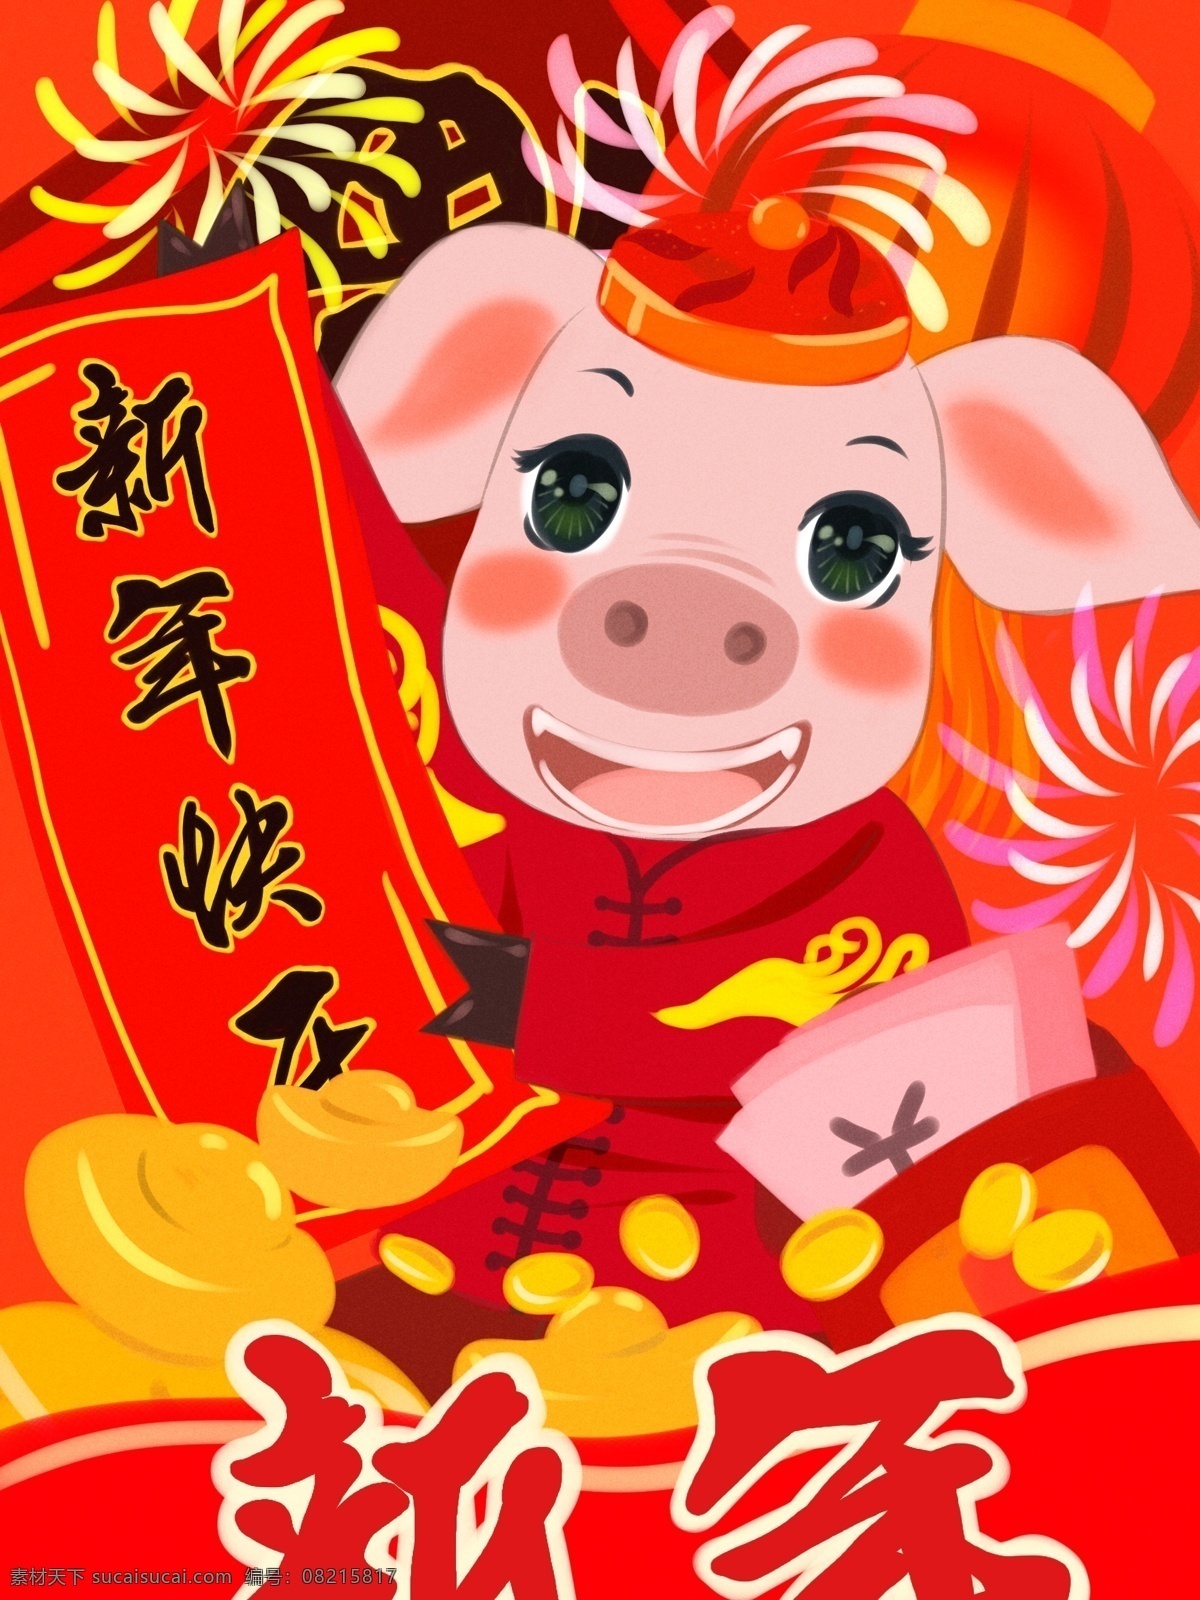 猪年 快乐 红色 金 猪 拜年 新年 喜庆 插画 金币 红包 灯笼 猪年快乐 新年快乐 烟花 元宝 钞票 福字